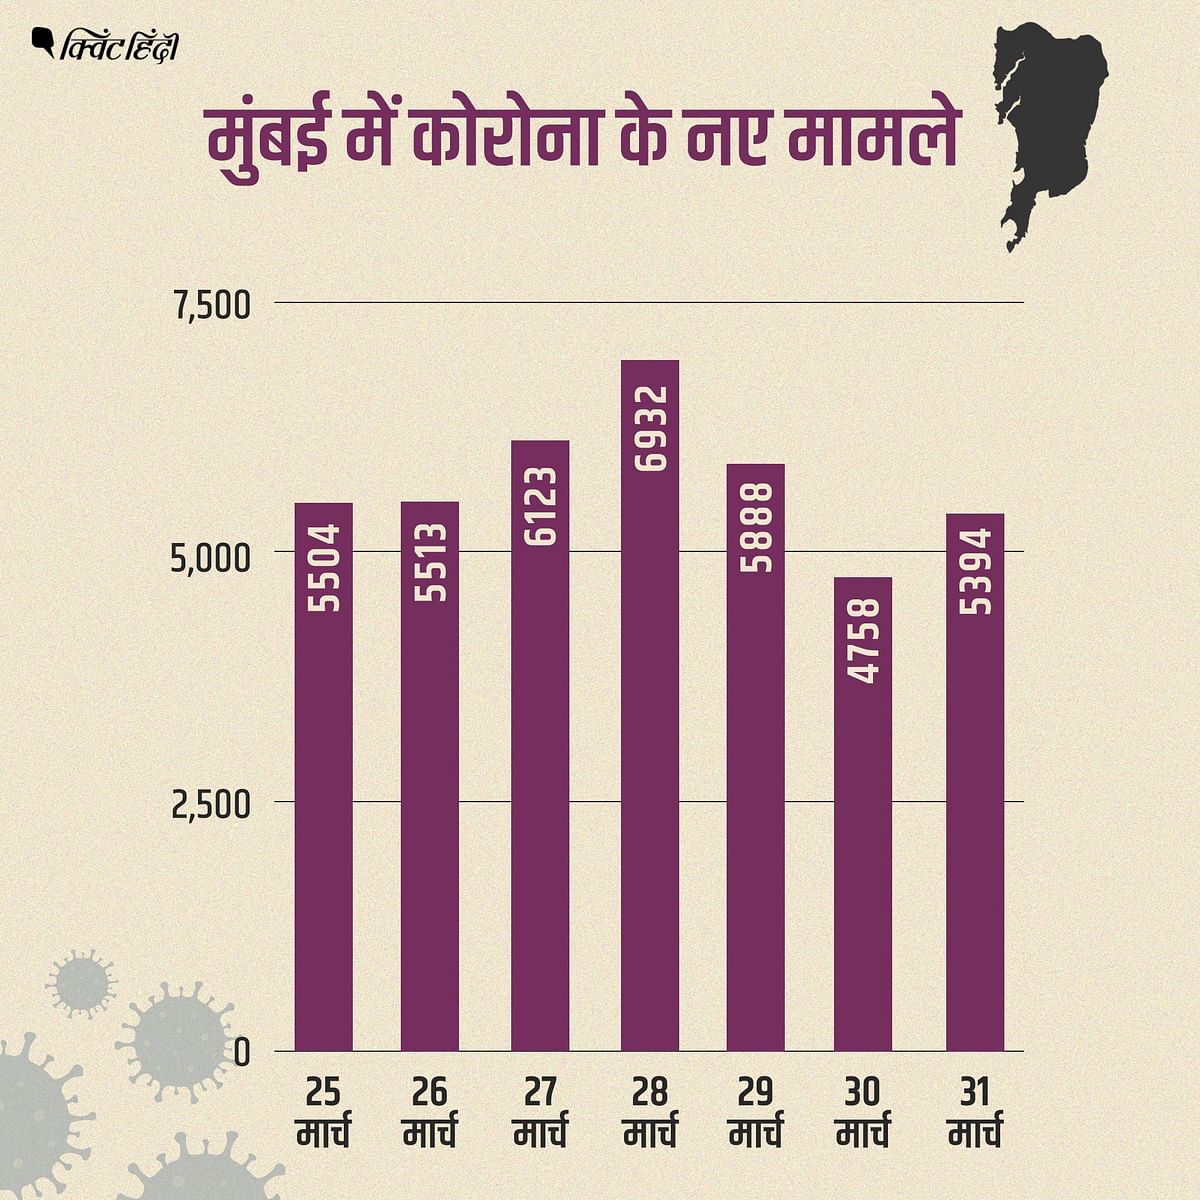 महाराष्ट्र ने मार्च 2021 में कोरोना मामलों की सबसे बड़ी बढ़त दर्ज की है.